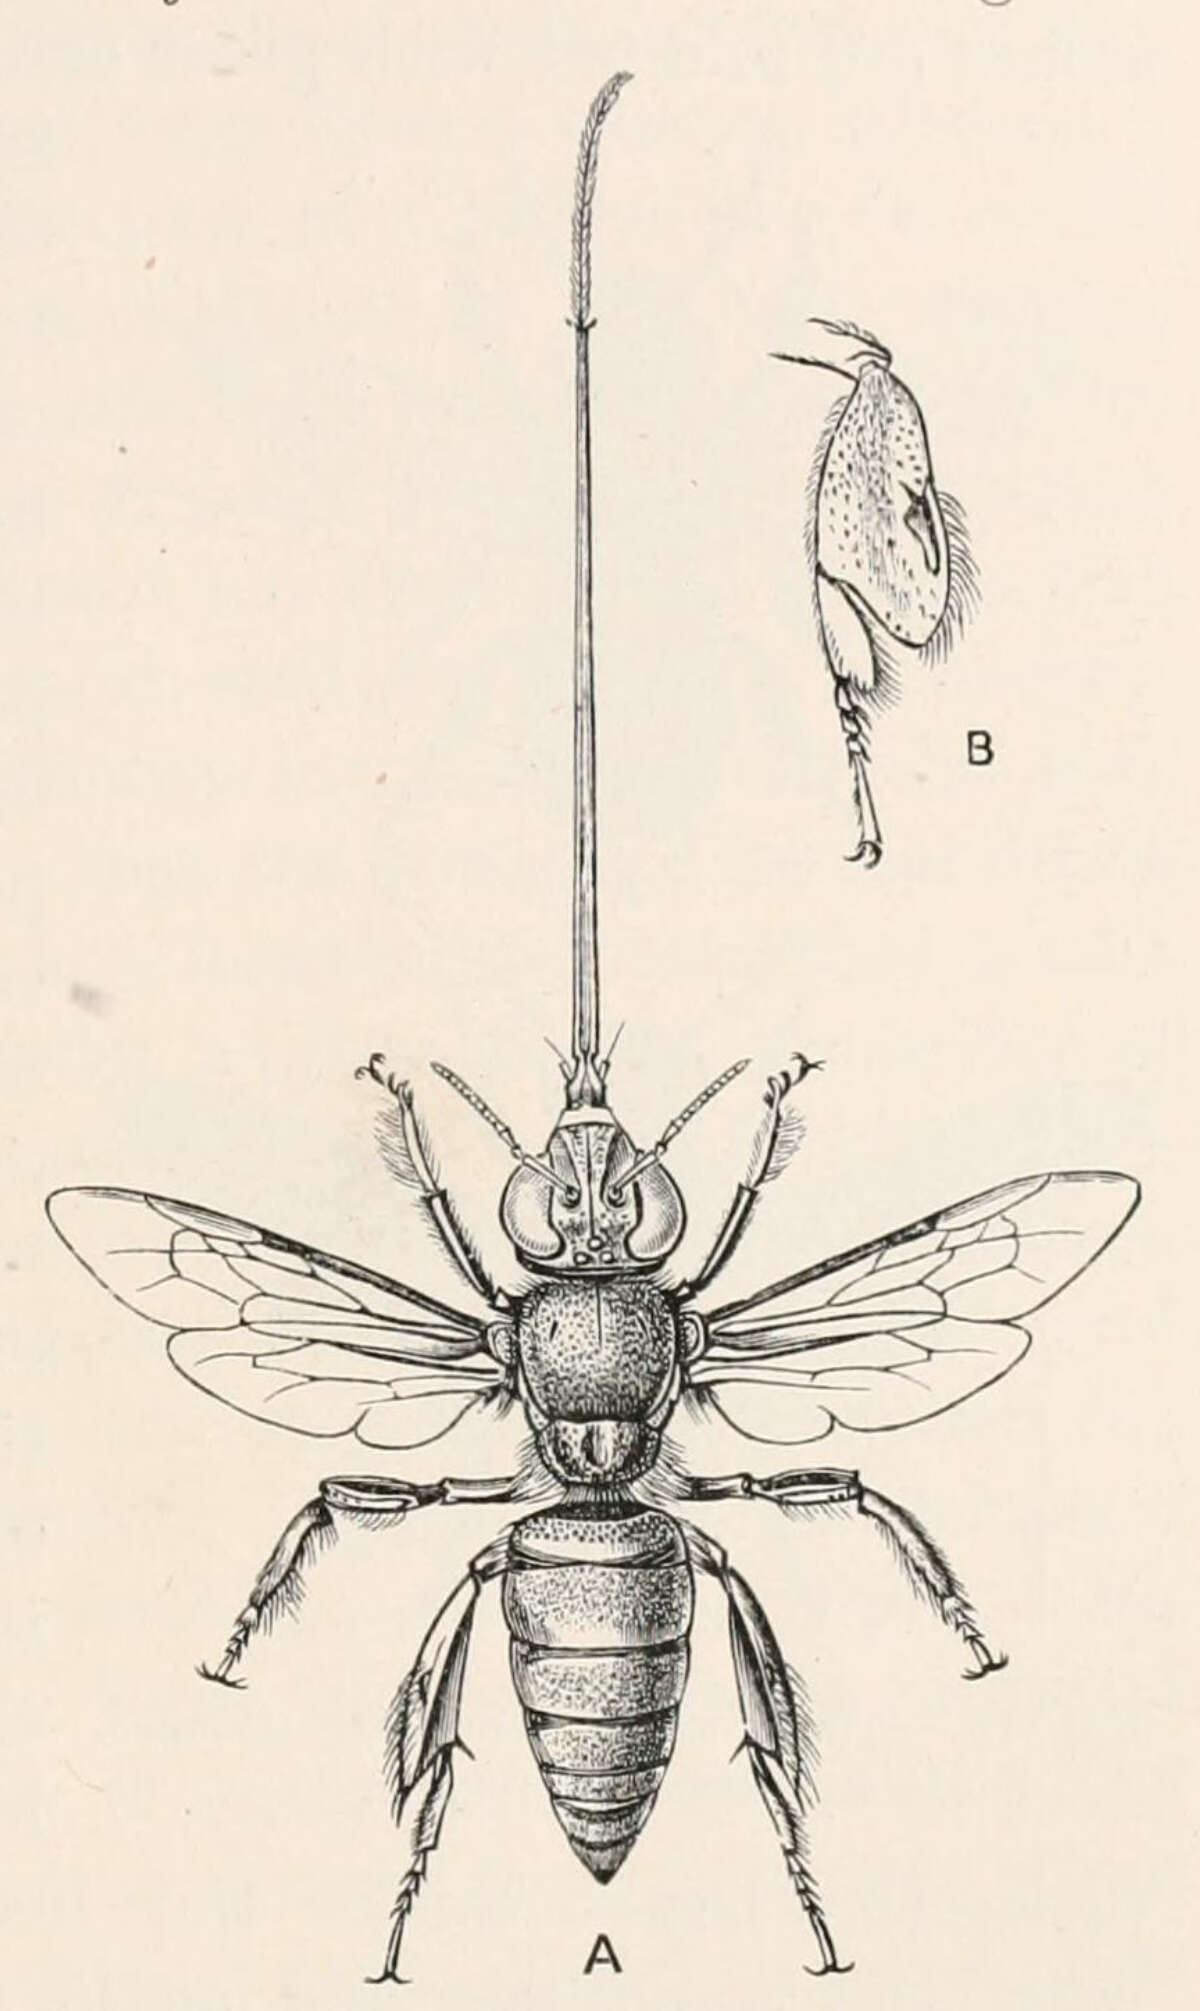 Image of Euglossa cordata (Linnaeus 1758)